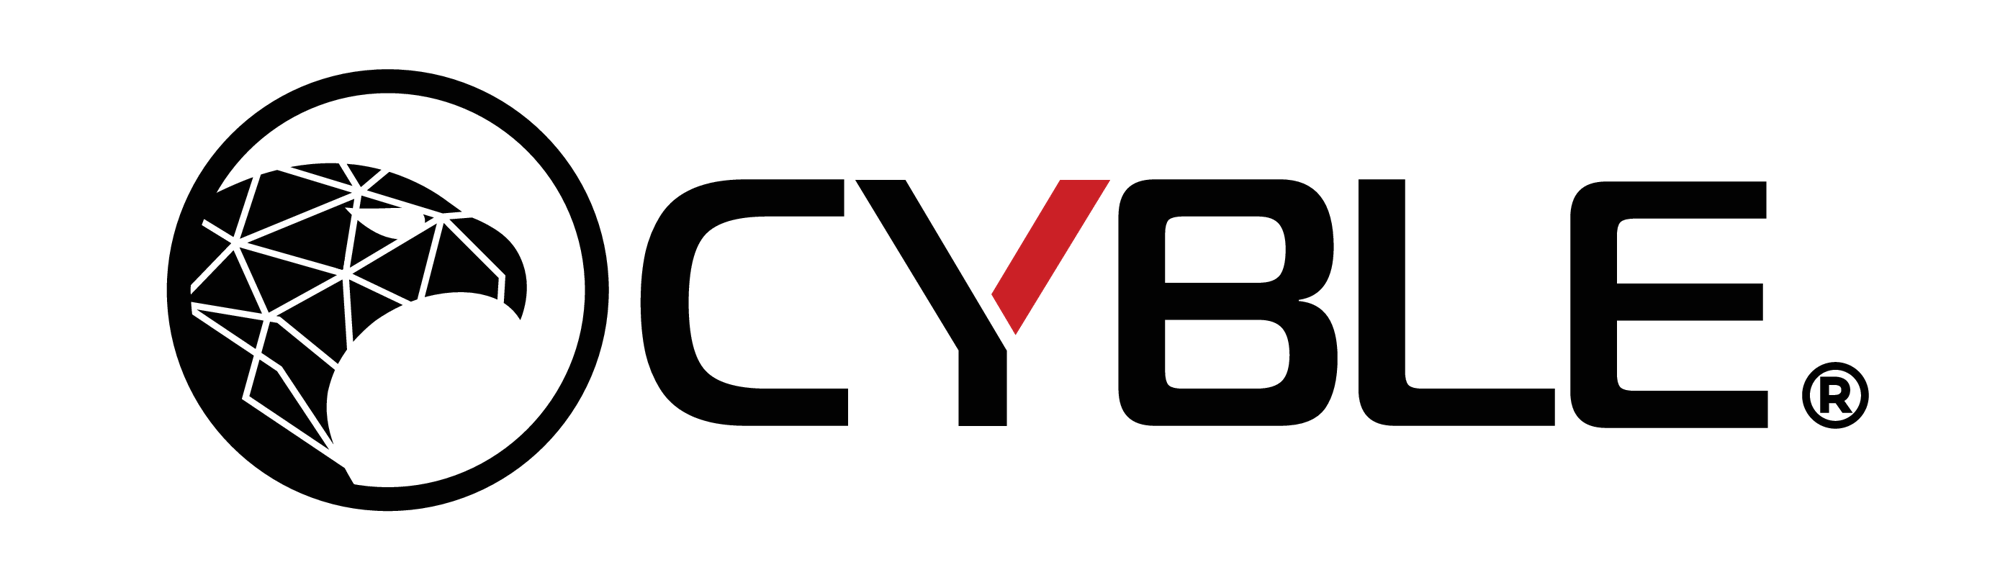 Cyble-logo